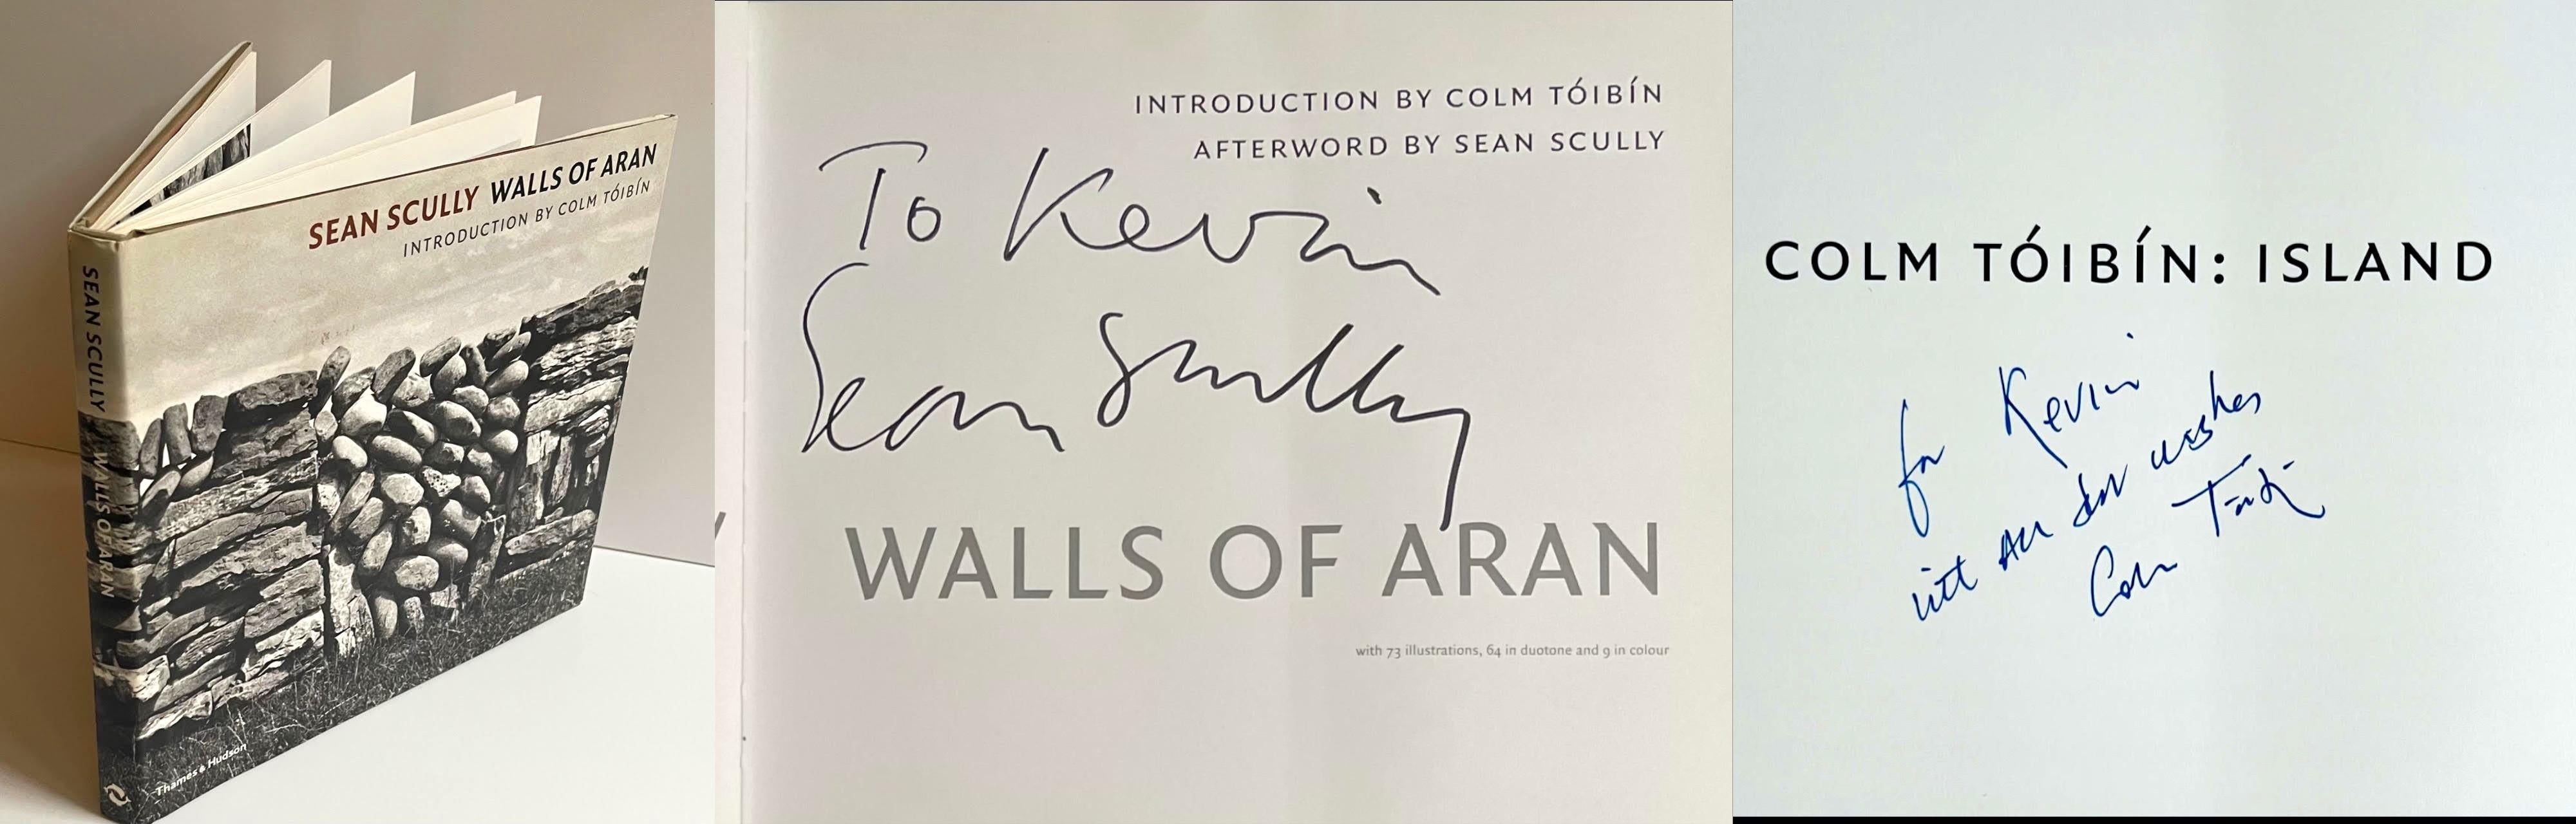 Livre « Walls of Aran » signé et inscrit par Sean Scully et Colm Toibin